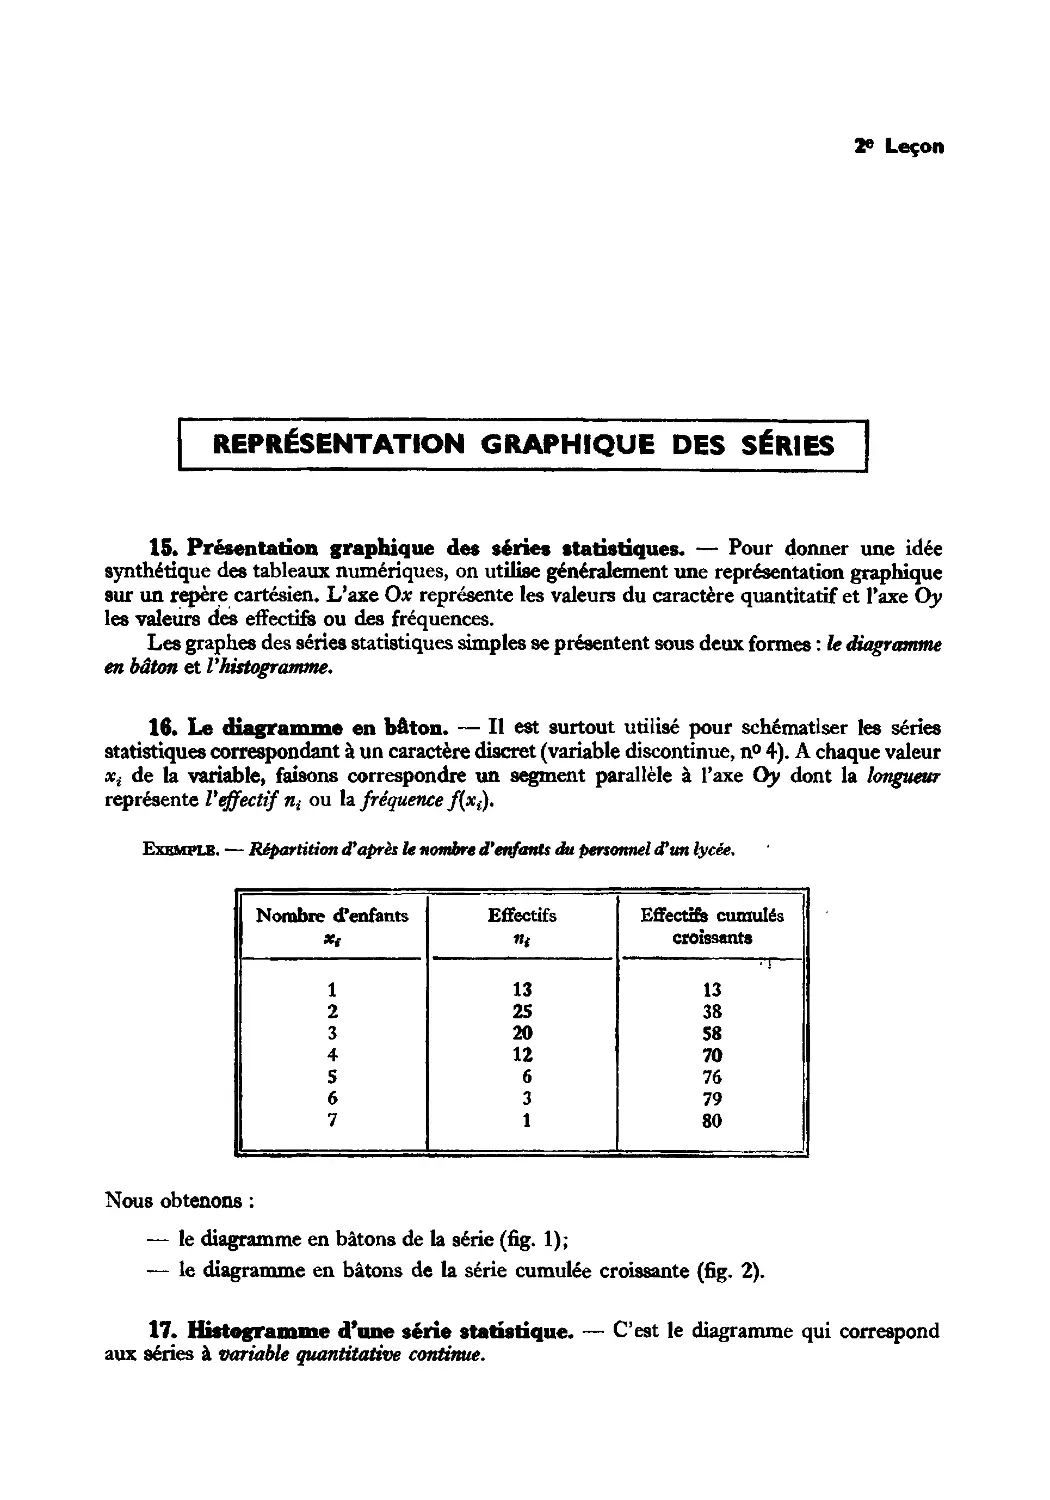 Leçon 2 — Représentation graphique des séries statistiques
16. Le diagramme en bâton
17. Histogramme d’une série statistique